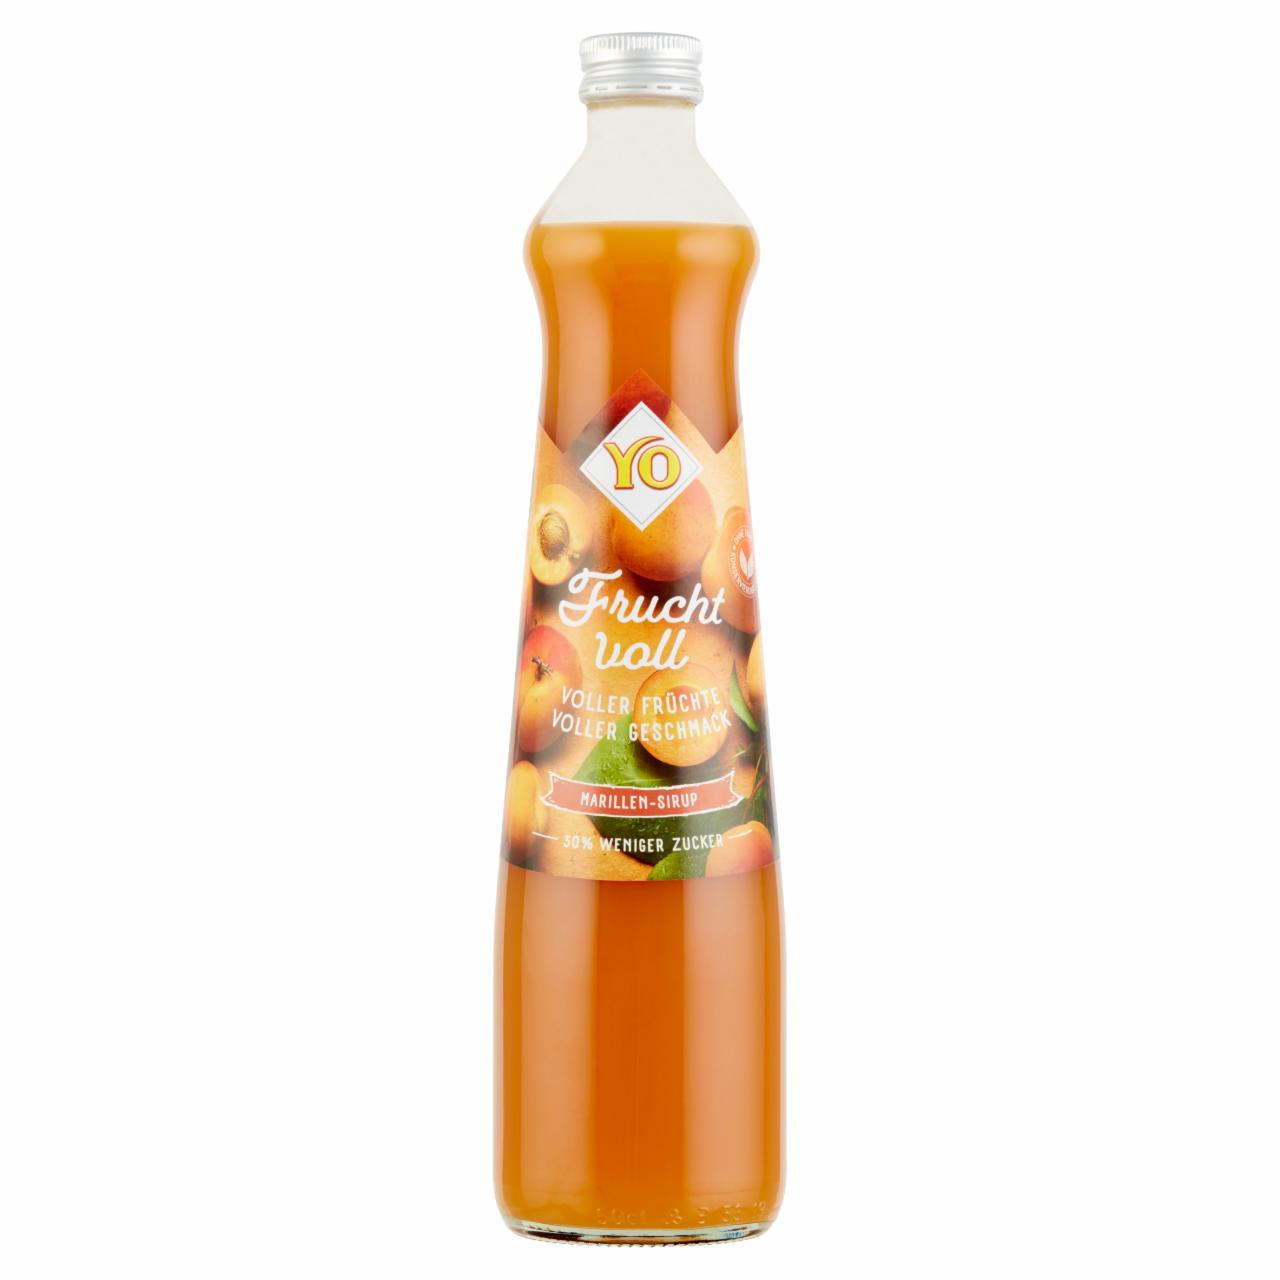 Képek - YO csökkentett energiatartalmú sárgabarack-narancs gyümölcsszörp, csökkentett cukortartalommal 0,5 l